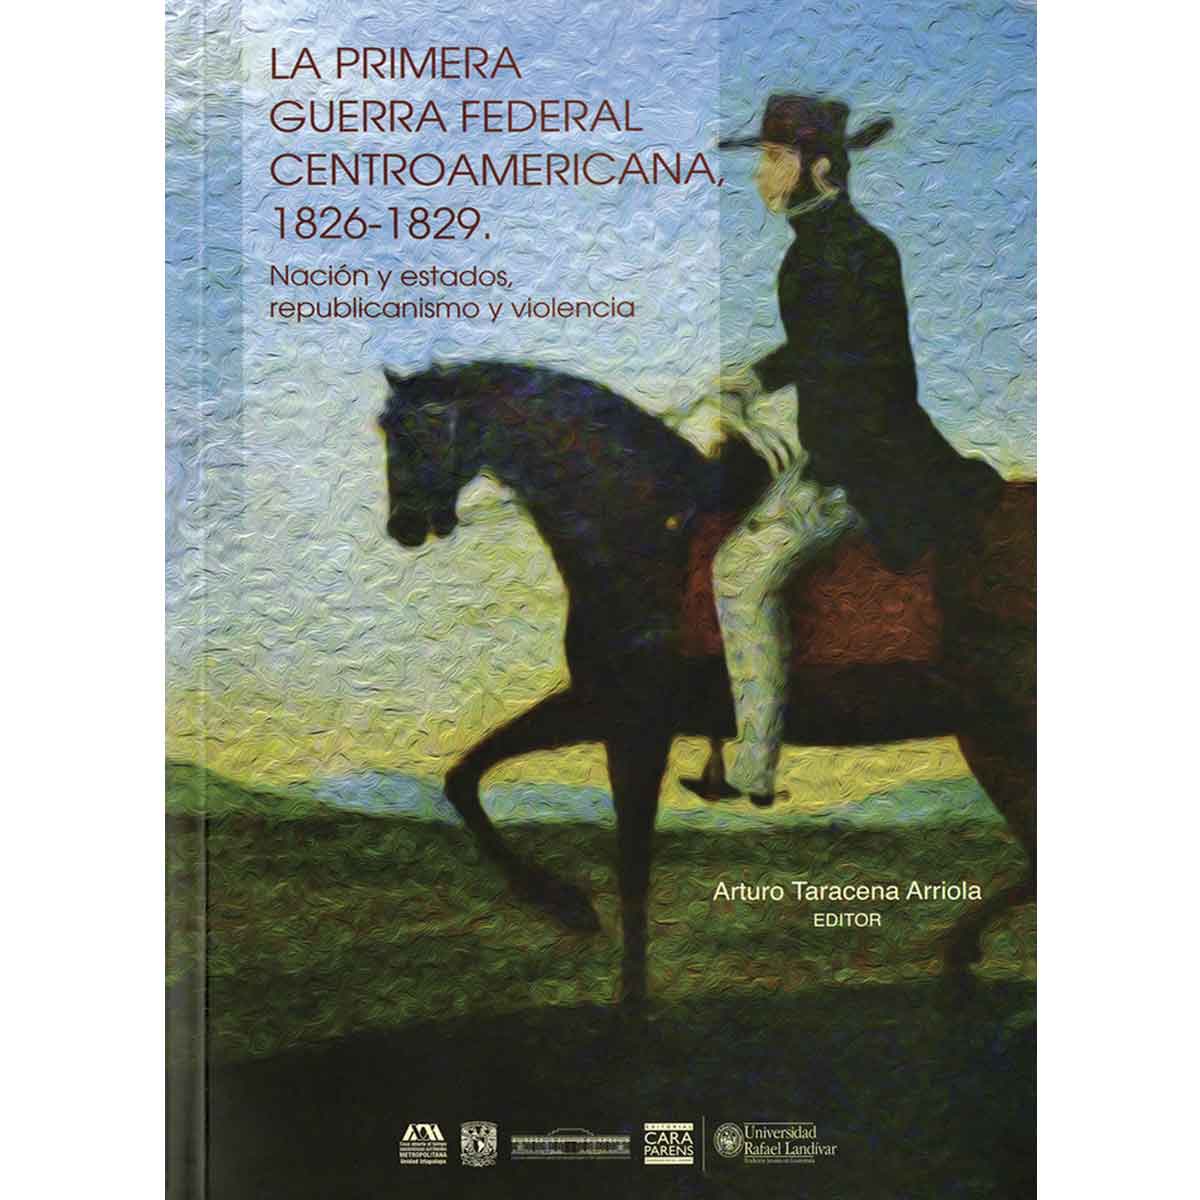 LA PRIMERA GUERRA FEDERAL CENTROAMERICANA, 1826-1829.